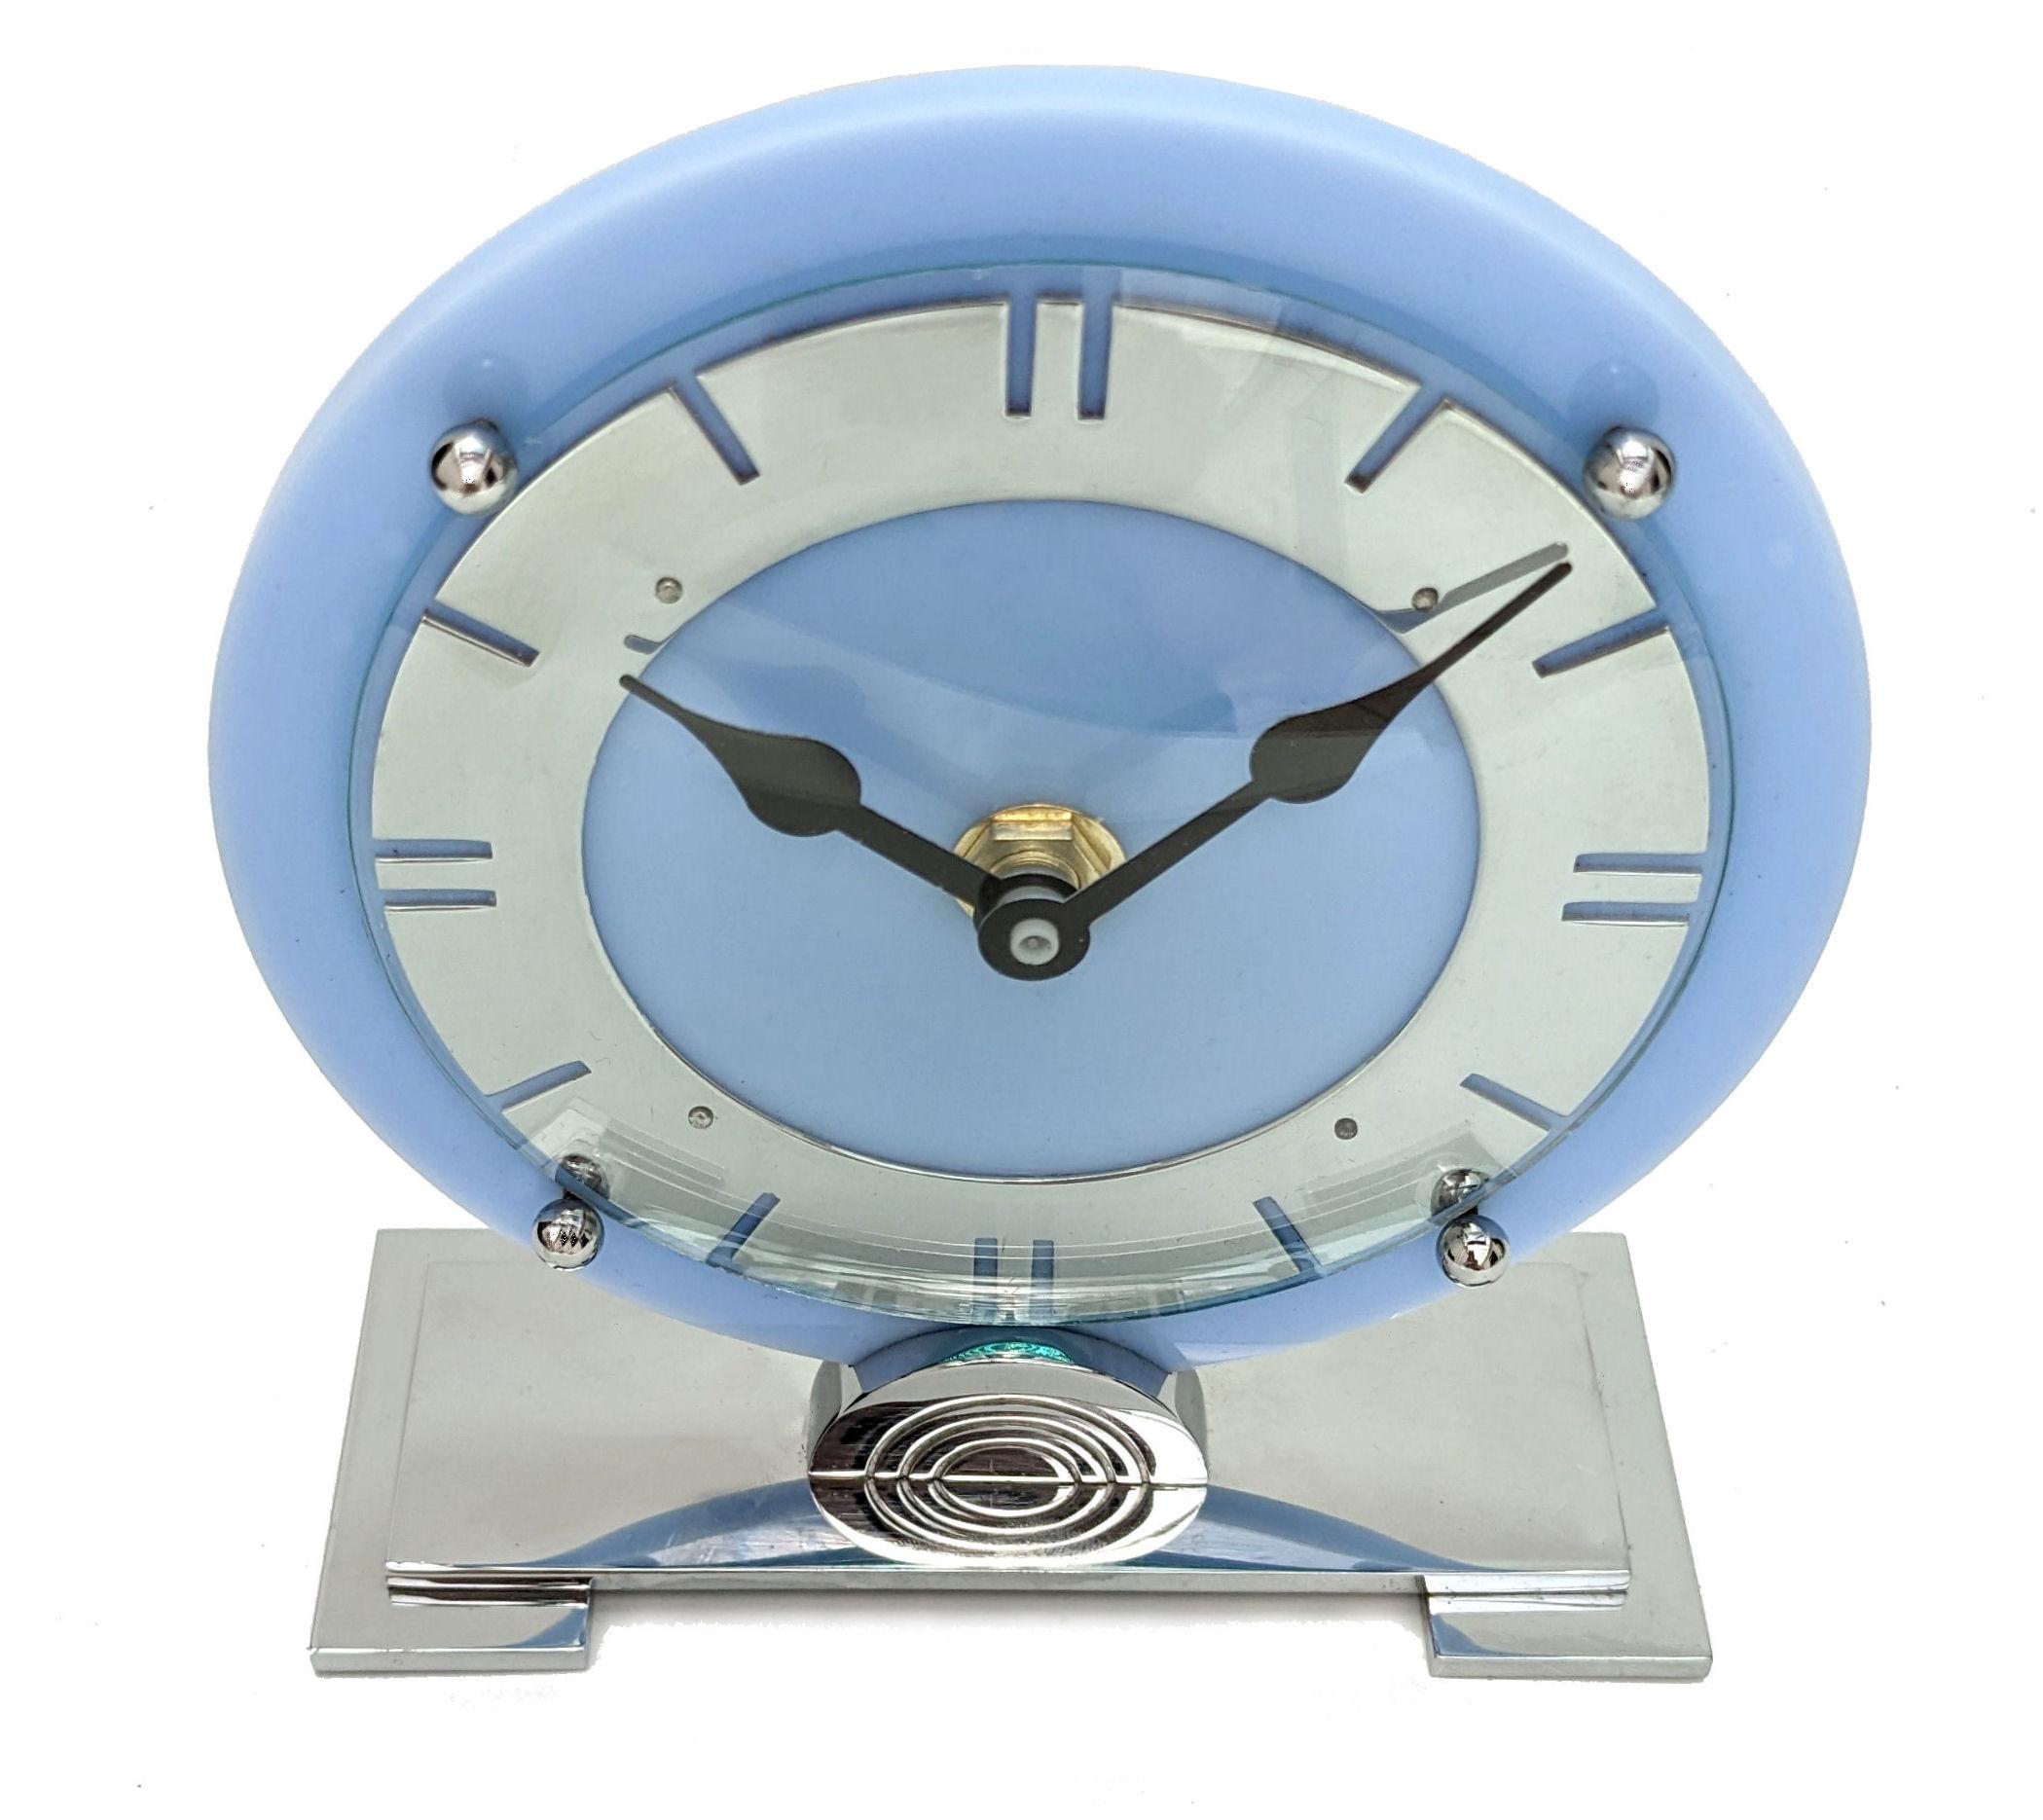 Dies ist eine sehr attraktive englische Art Deco Uhr, die um 1930 hergestellt wurde. Es wurde von der Elektrik auf Batterie umgestellt, so dass keine Stecker oder Wicklungen erforderlich sind. Der Sockel ist verchromt, die Lünette ist ebenfalls